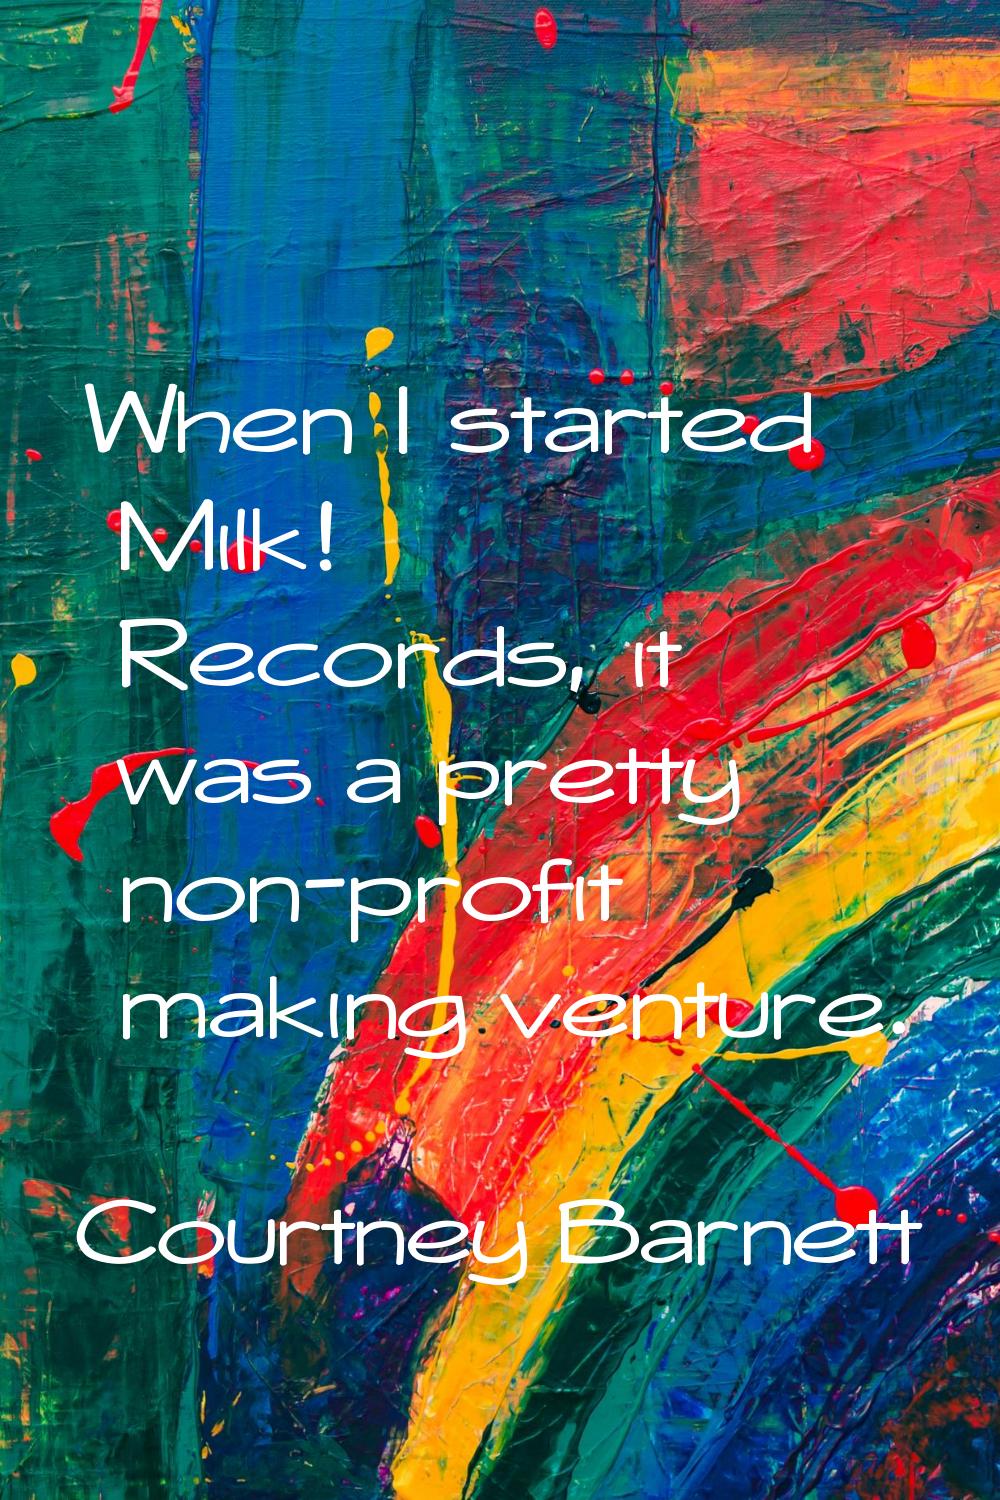 When I started Milk! Records, it was a pretty non-profit making venture.